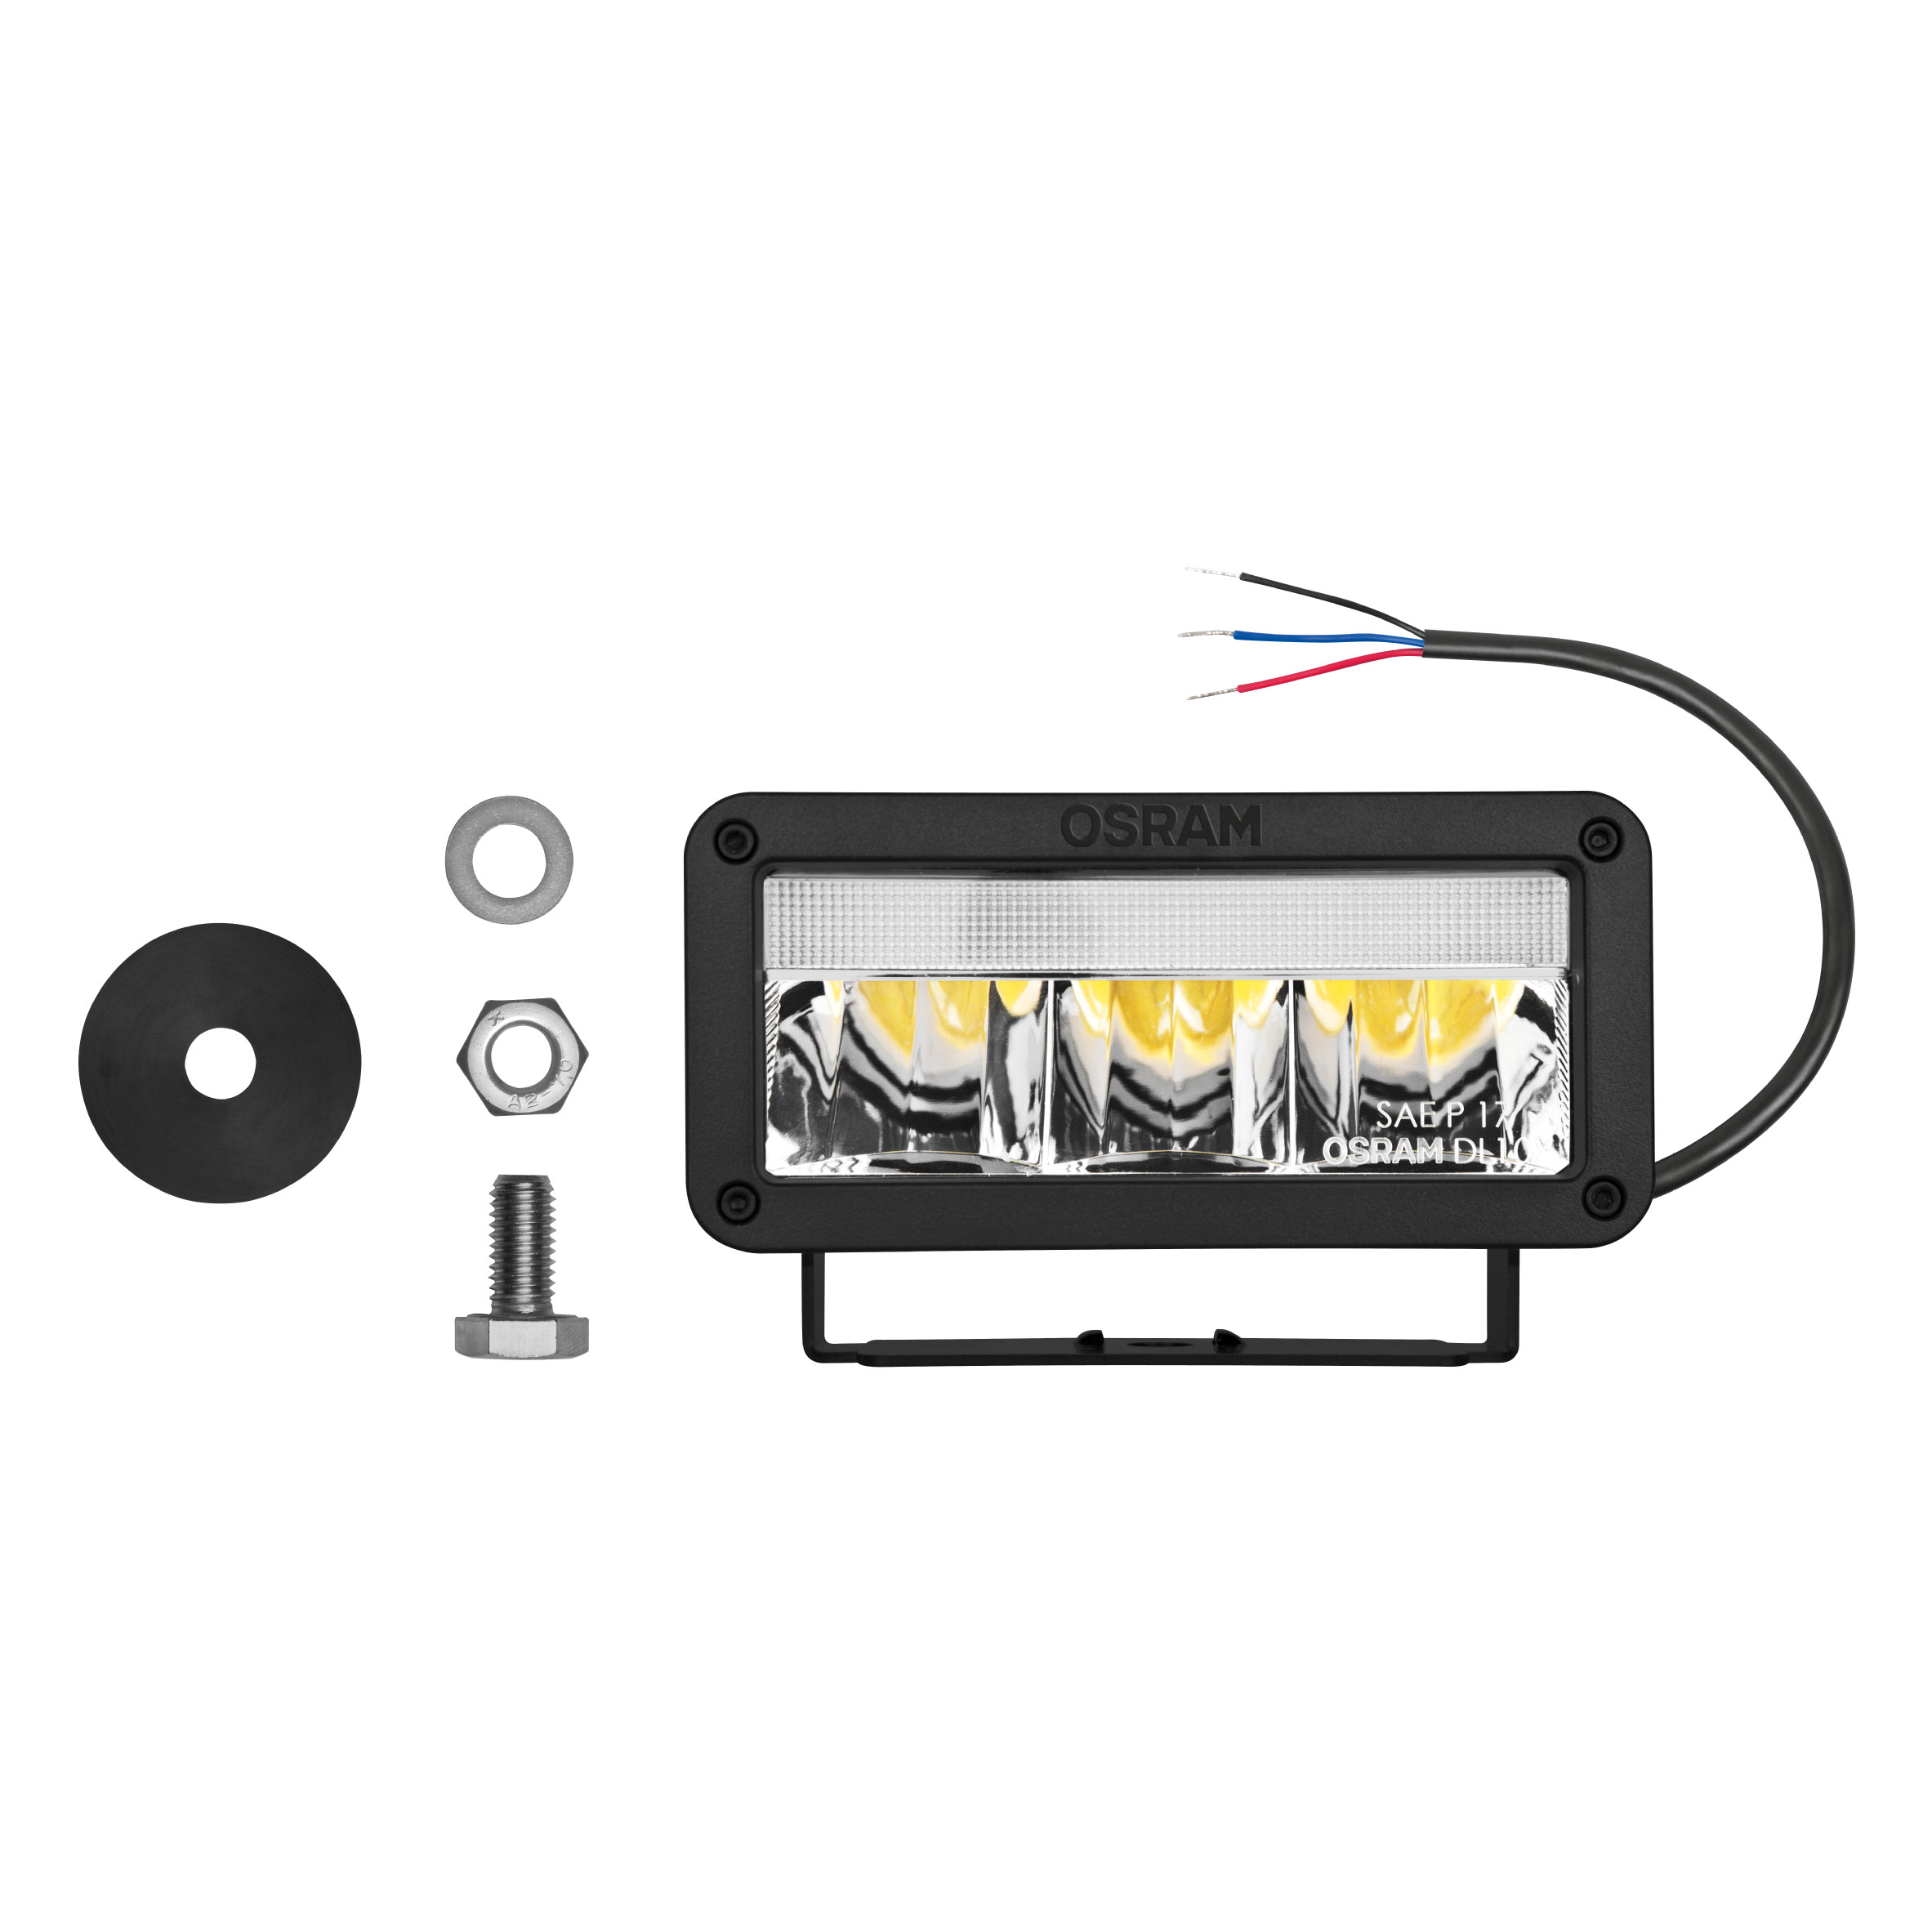 LEDriving LIGHTBAR MX140-SP Lichtleiste 1St. OSRAM